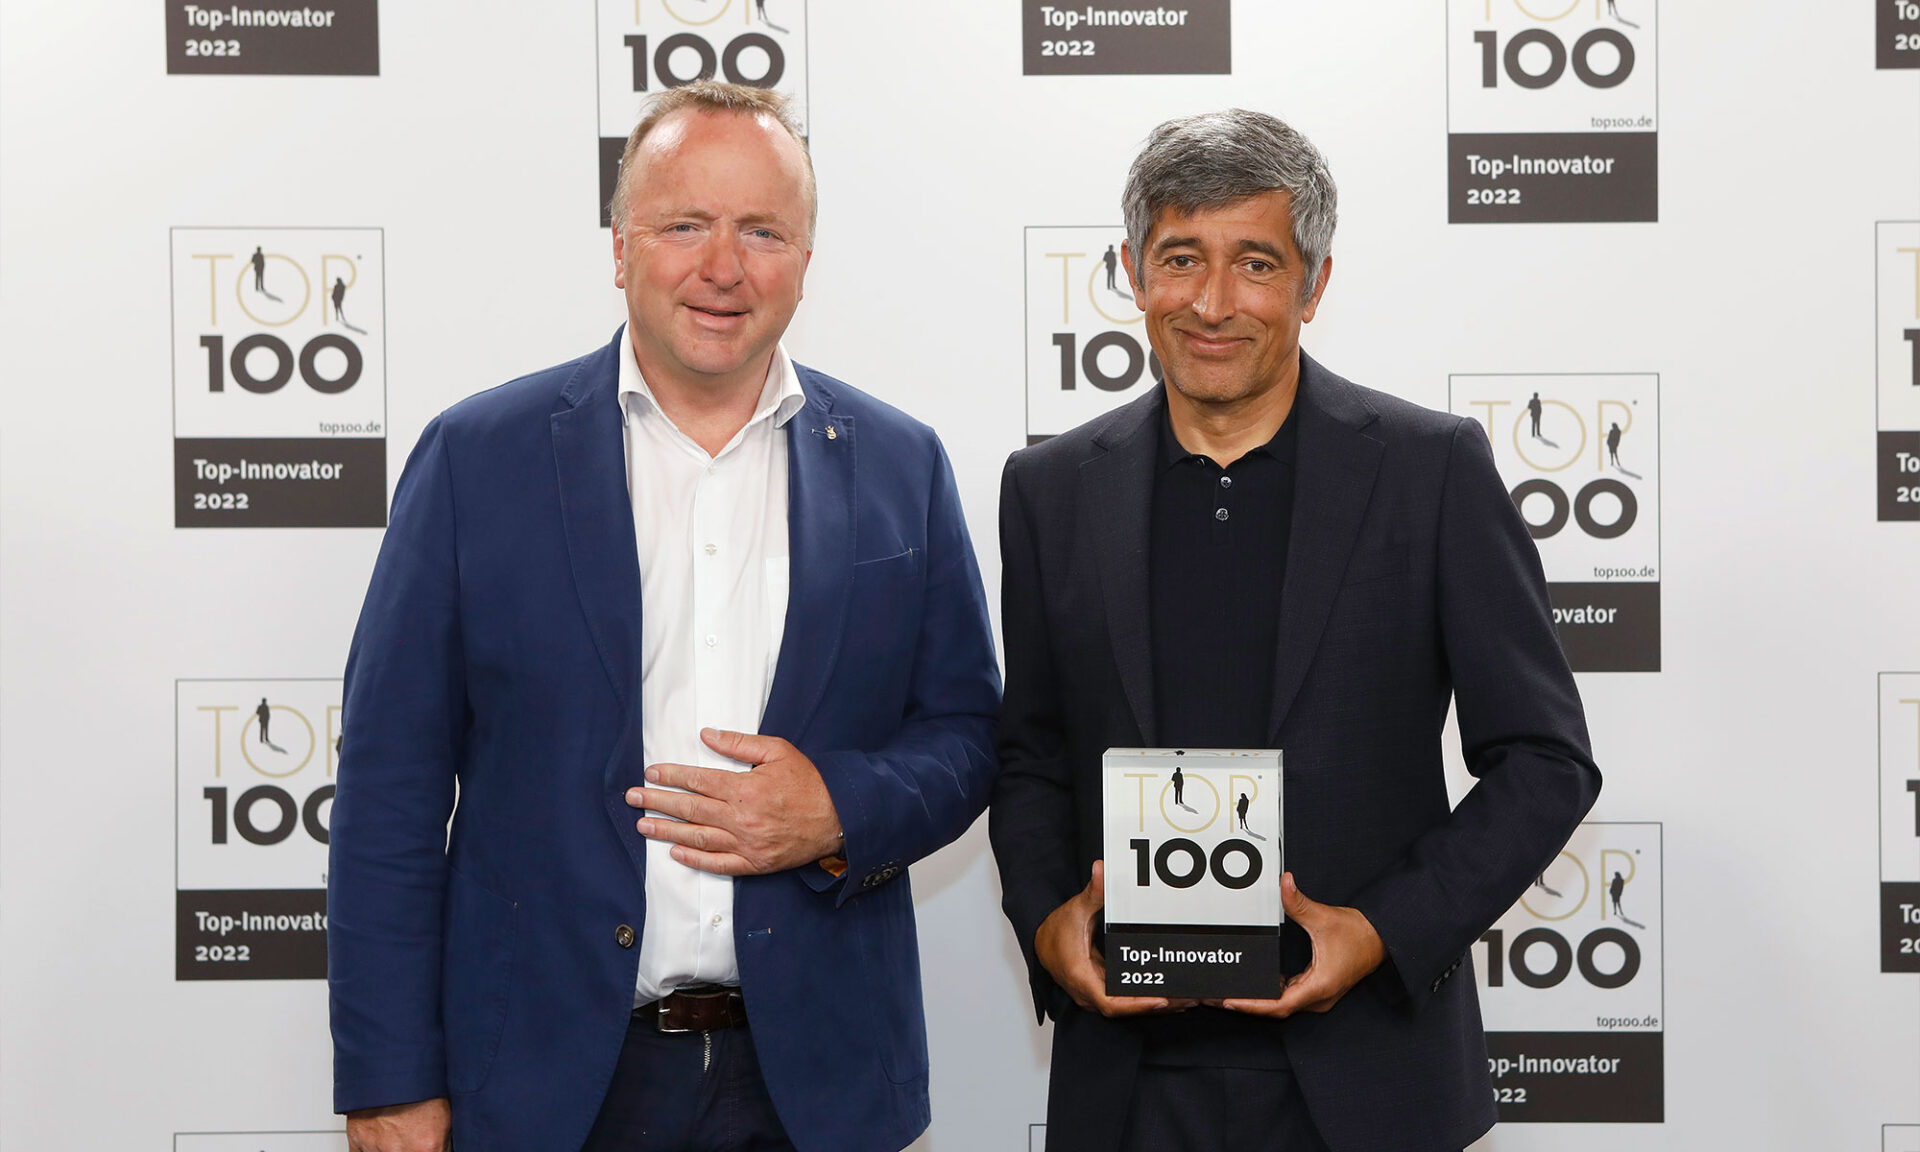 ewers - Auszeichnung - Top-Innovator 2022 - Preisverleihung